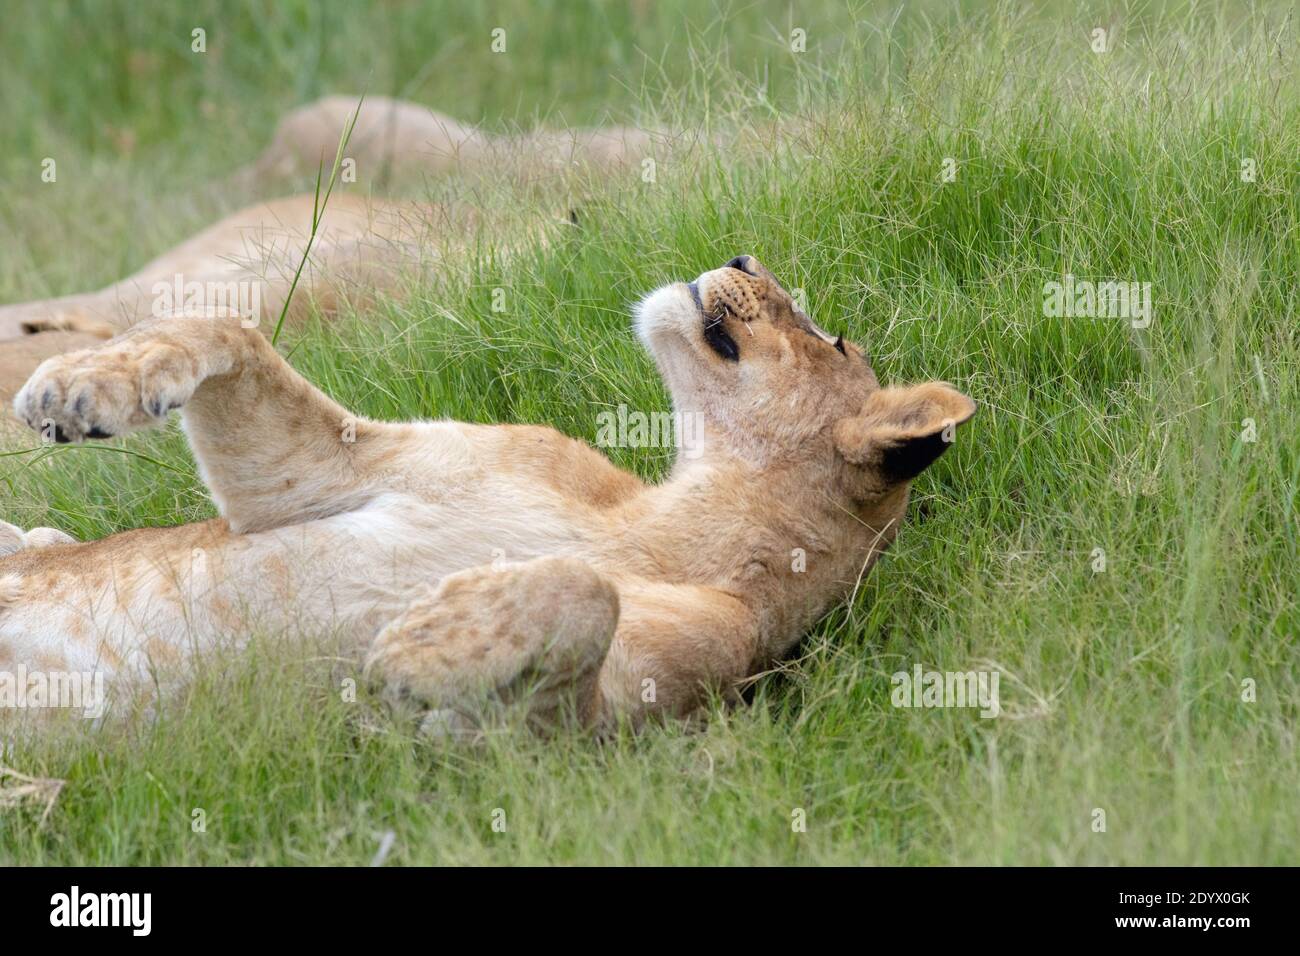 Afrikanischer Löwe (Panthera leo). Liegend, entspannt unreif, juvenil, liegend an der Flanke, inmitten der Grünlandvegetation. Dunkle Flecken auf den Pfoten suggestive o Stockfoto